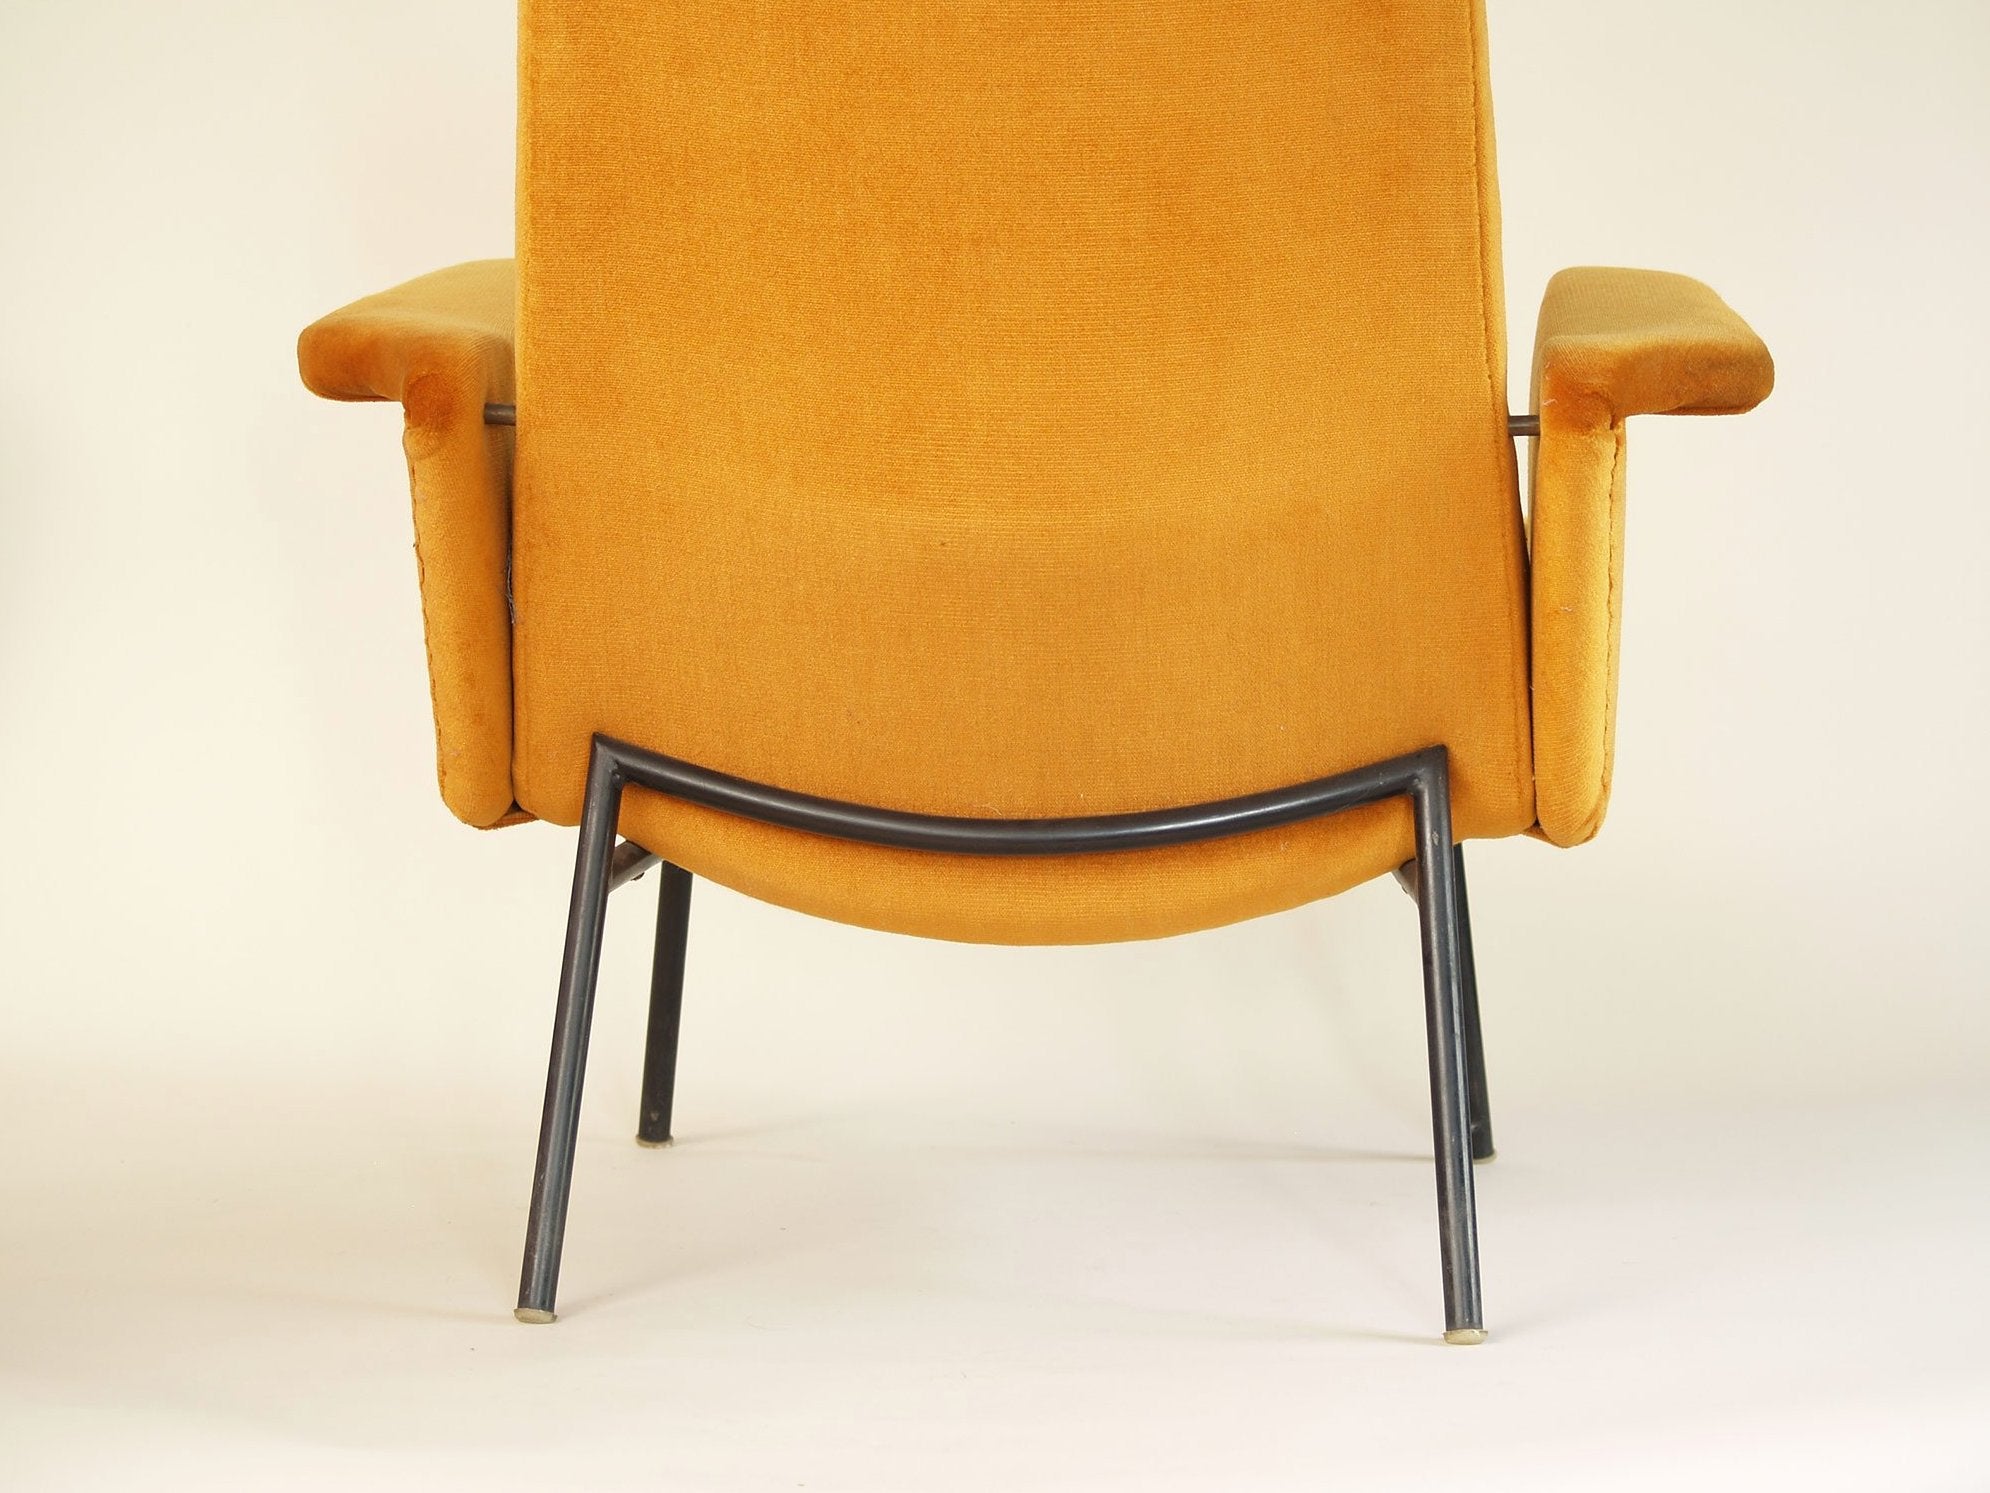 Paire de fauteuils SK660 par Pierre Guariche pour Steiner, France (1953)..Pair of SK660 chairs by Pierre Guariche for Steiner, France (1953)